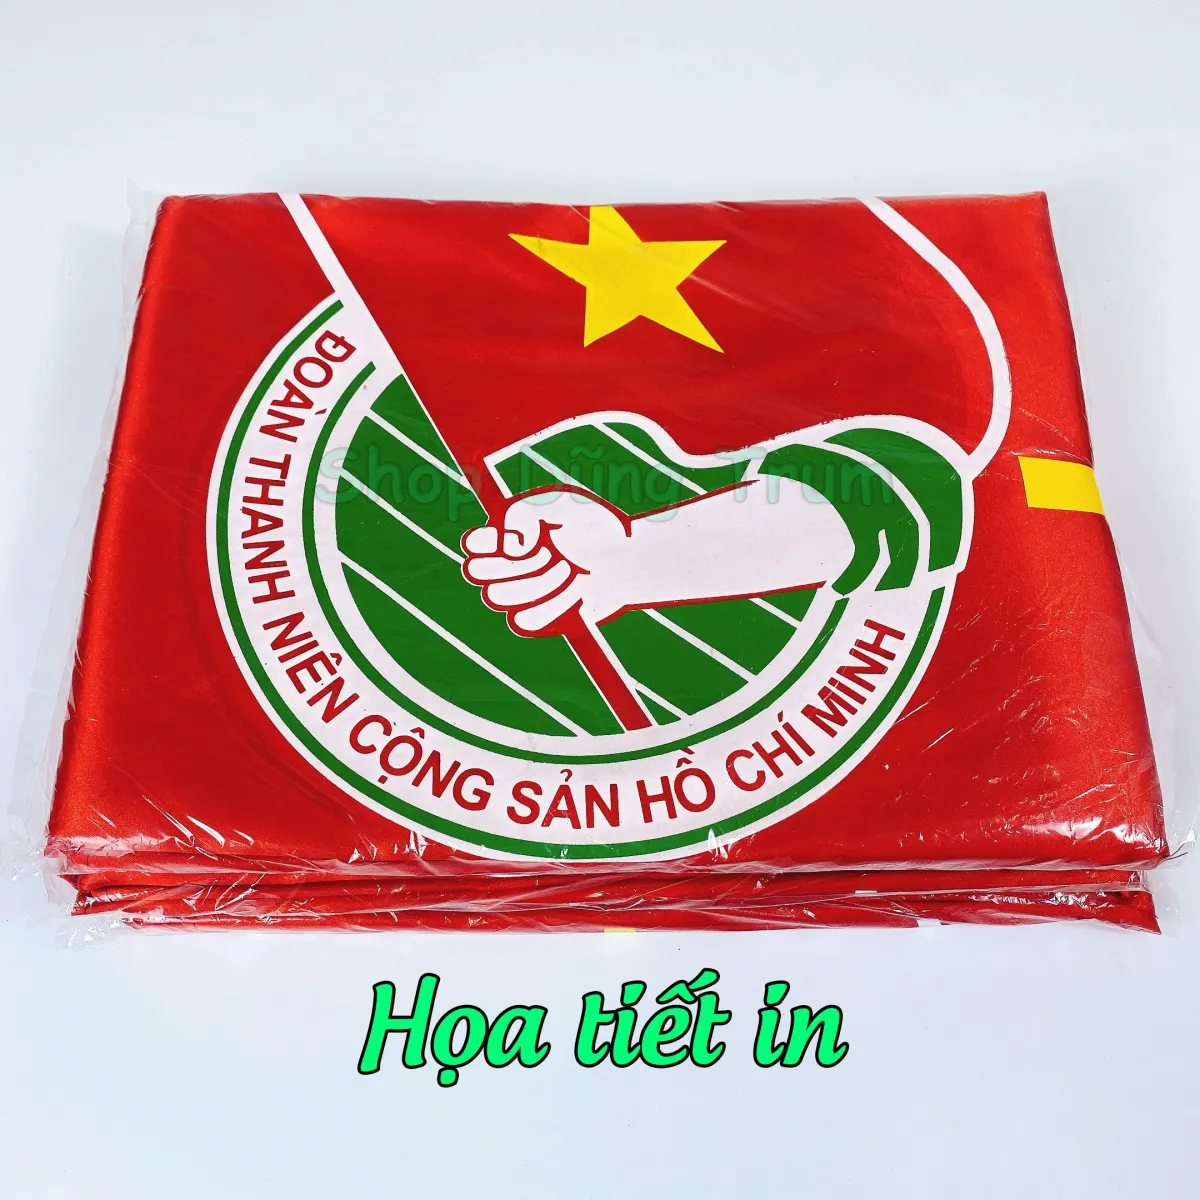 Vải Satanh: Sản phẩm vải Satanh của Việt Nam đã vươn lên trên thị trường quốc tế nhờ chất lượng tốt và giá cả cạnh tranh. Những hình ảnh về sản phẩm này sẽ khiến bạn cảm thấy tự hào về những sản phẩm chất lượng cao được sản xuất tại Việt Nam.